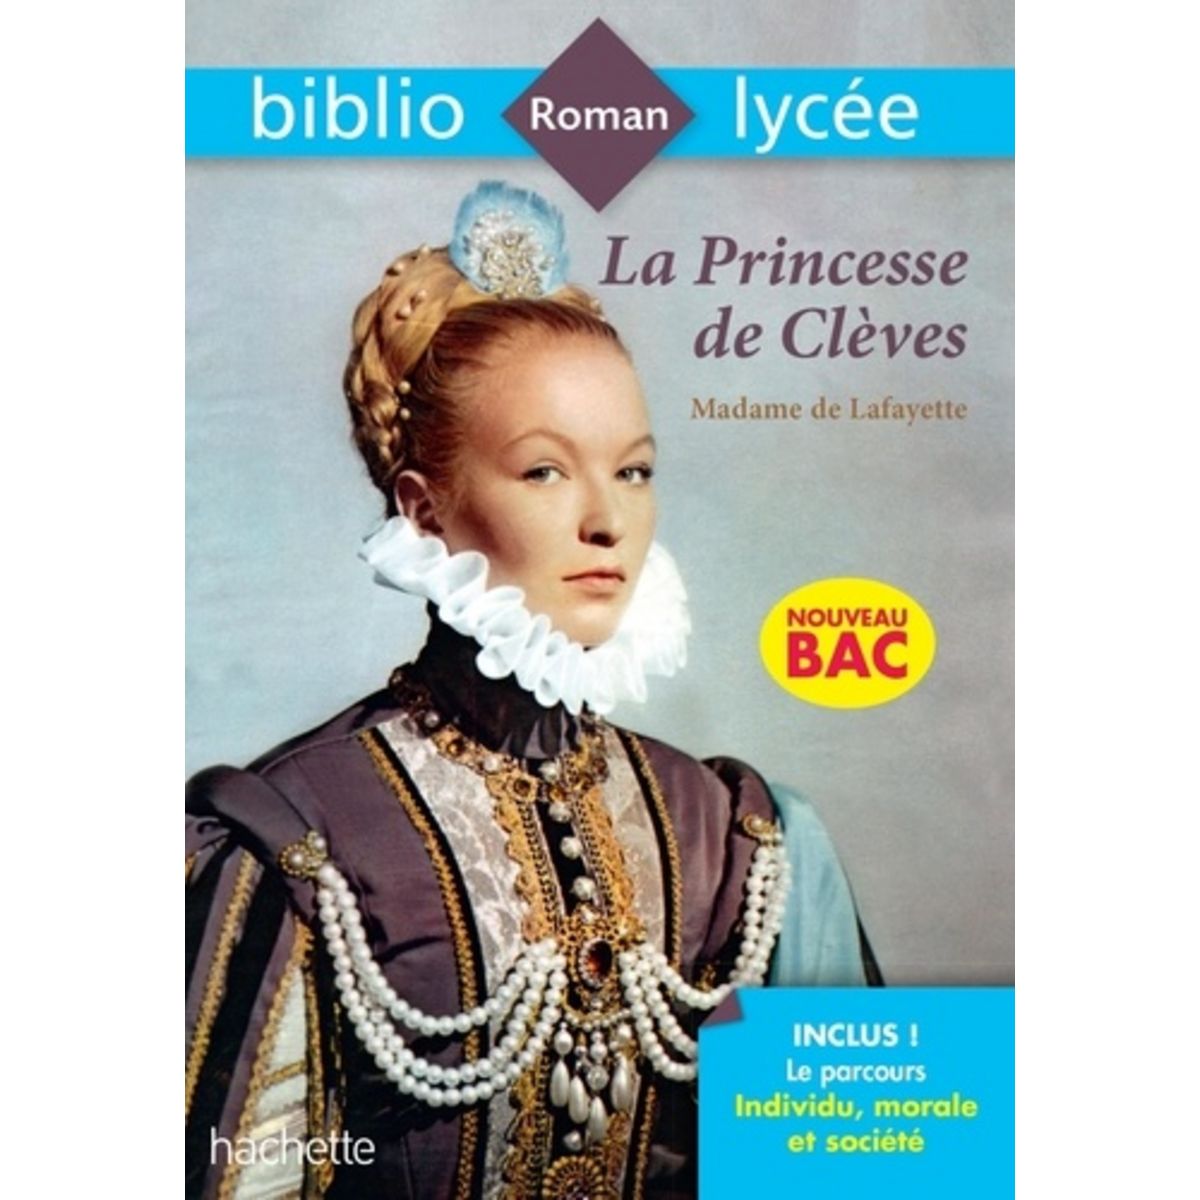  LA PRINCESSE DE CLEVES, Madame de Lafayette